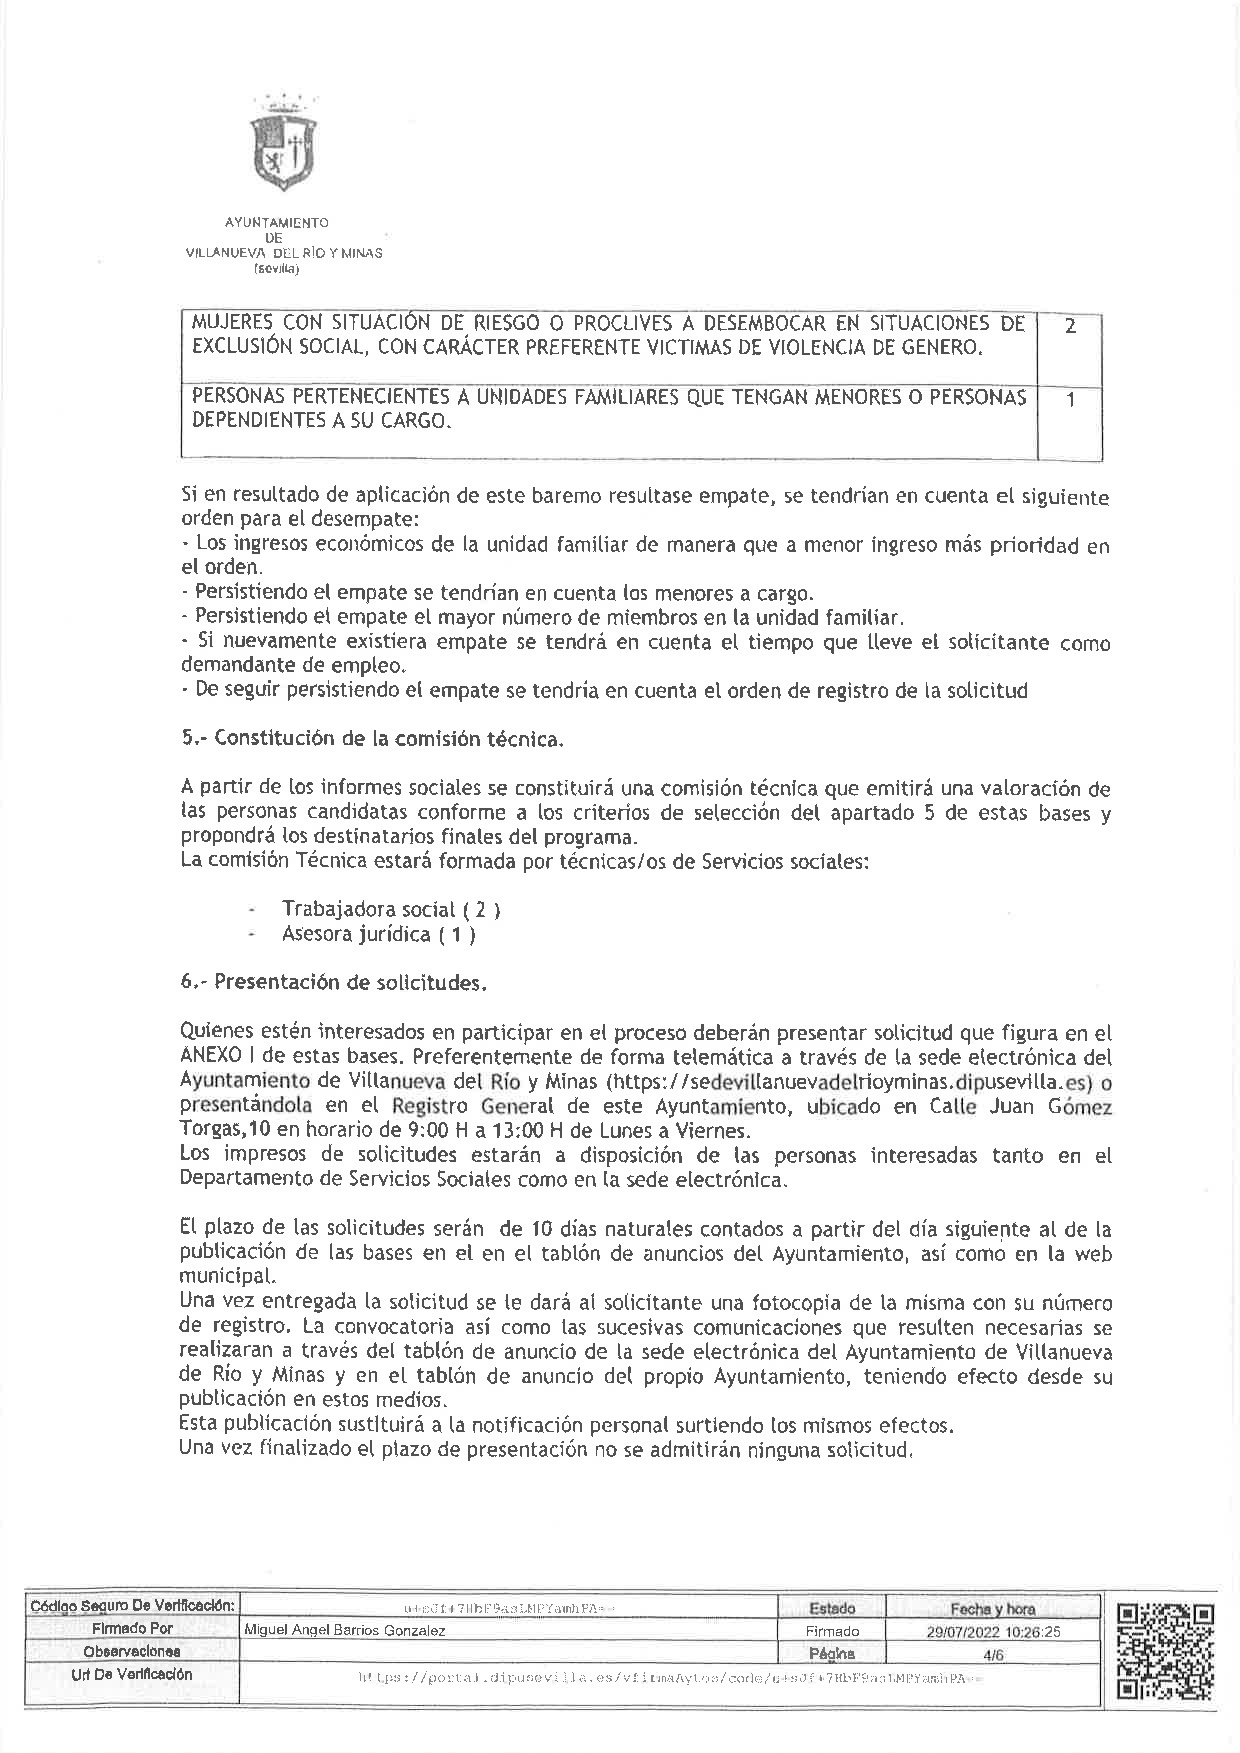 DECRETO DE ALCALDIA Nº 149. BASES PROGRAMA PREVENCION DE LA EXCLUSION SOCIAL, DEL PLAN ACTUA-004